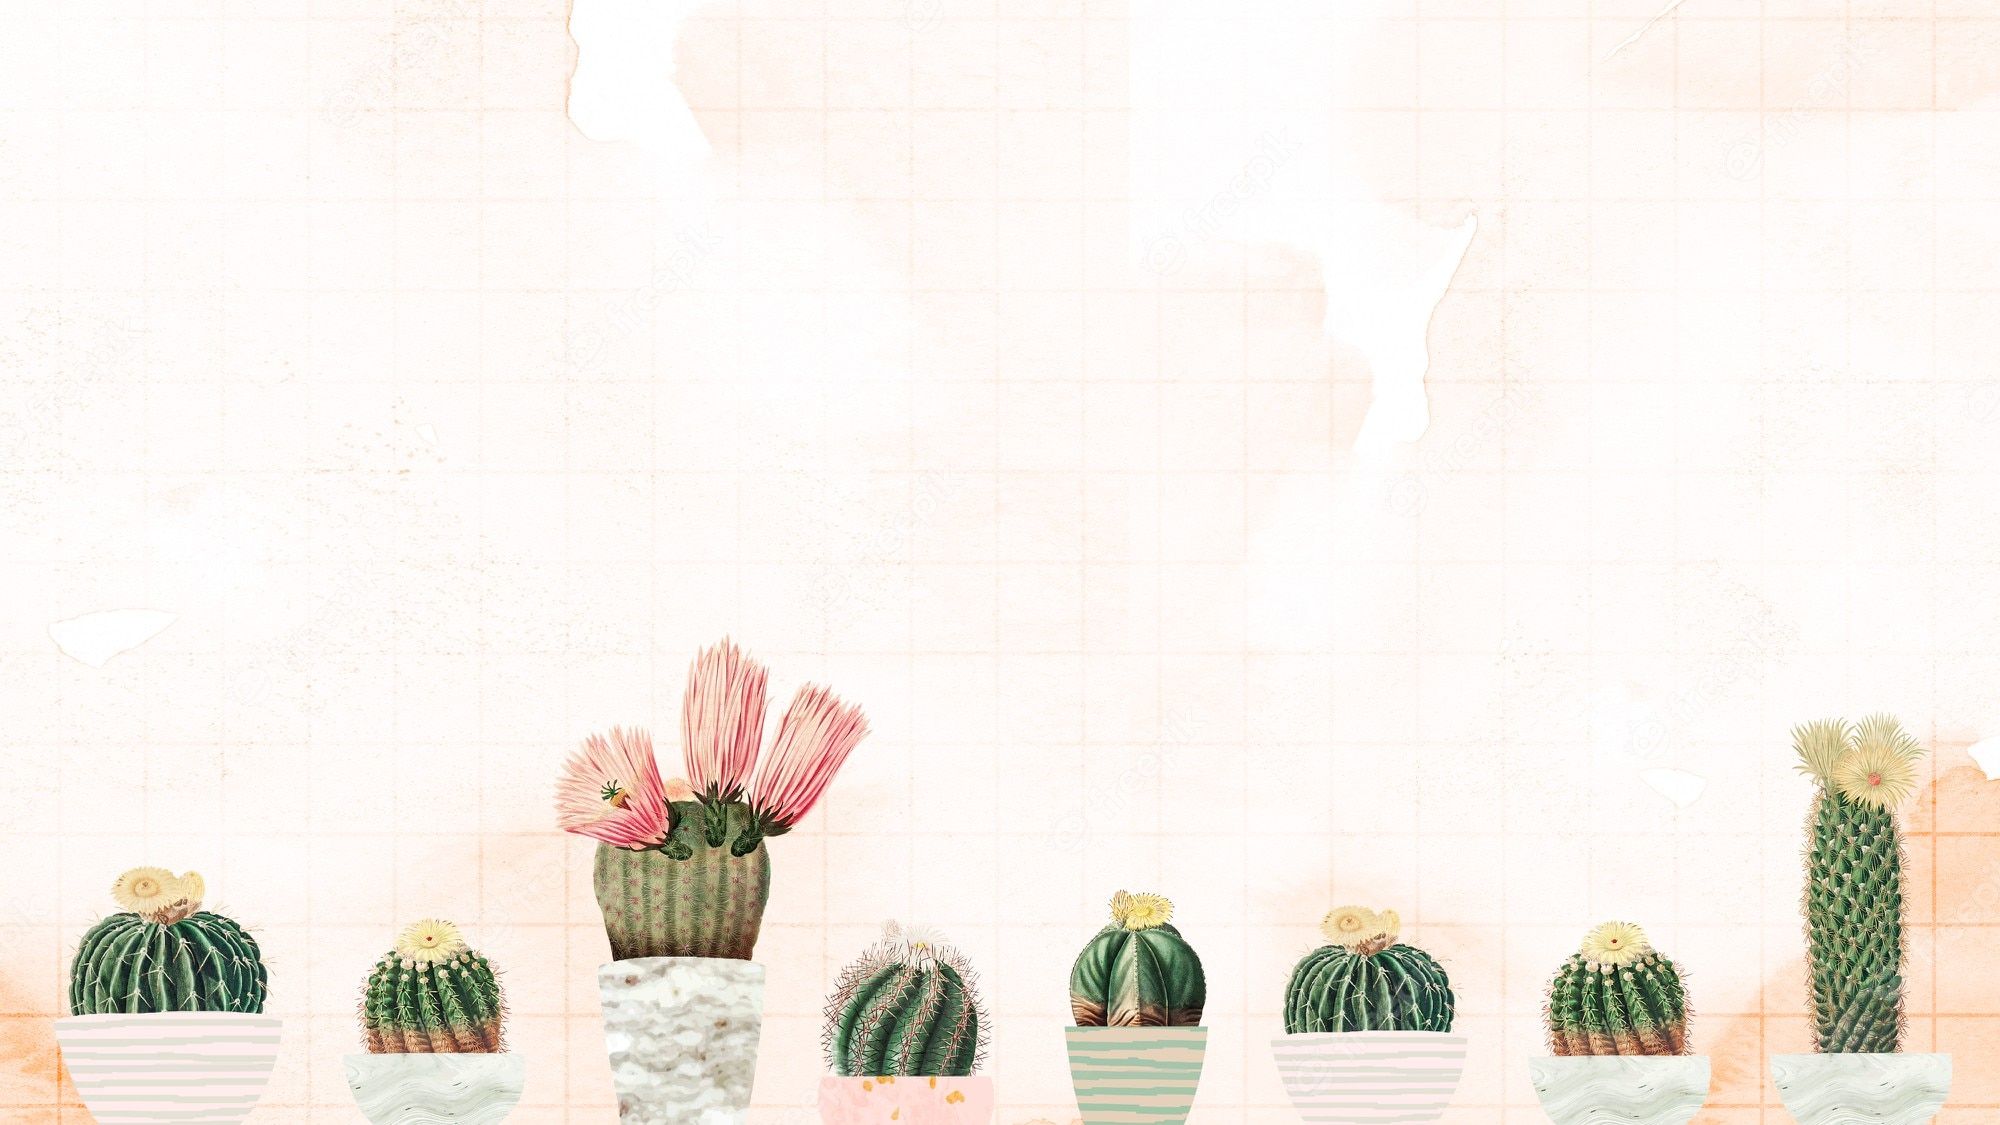  Kaktus Hintergrundbild 2000x1125. Fotos Zeichnung, Über 45.000 hochqualitative kostenlose Stockfotos